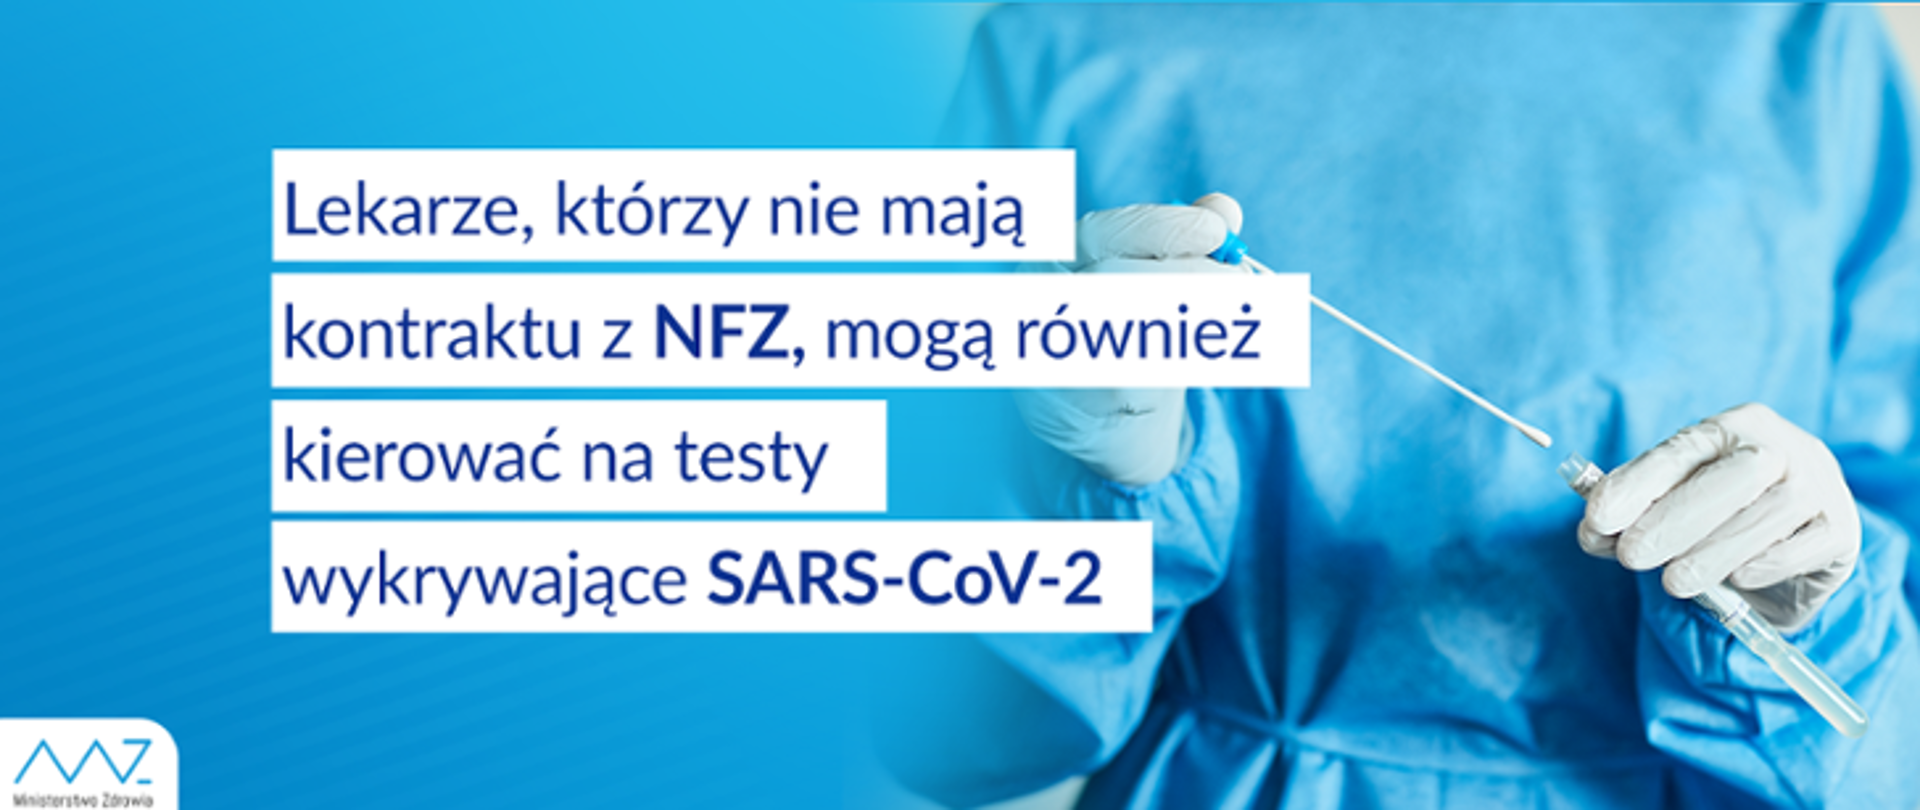 Lekarze, którzy nie mają kontraktu z NFZ, mogą również kierować na testy wykrywające SARS-CoV-2